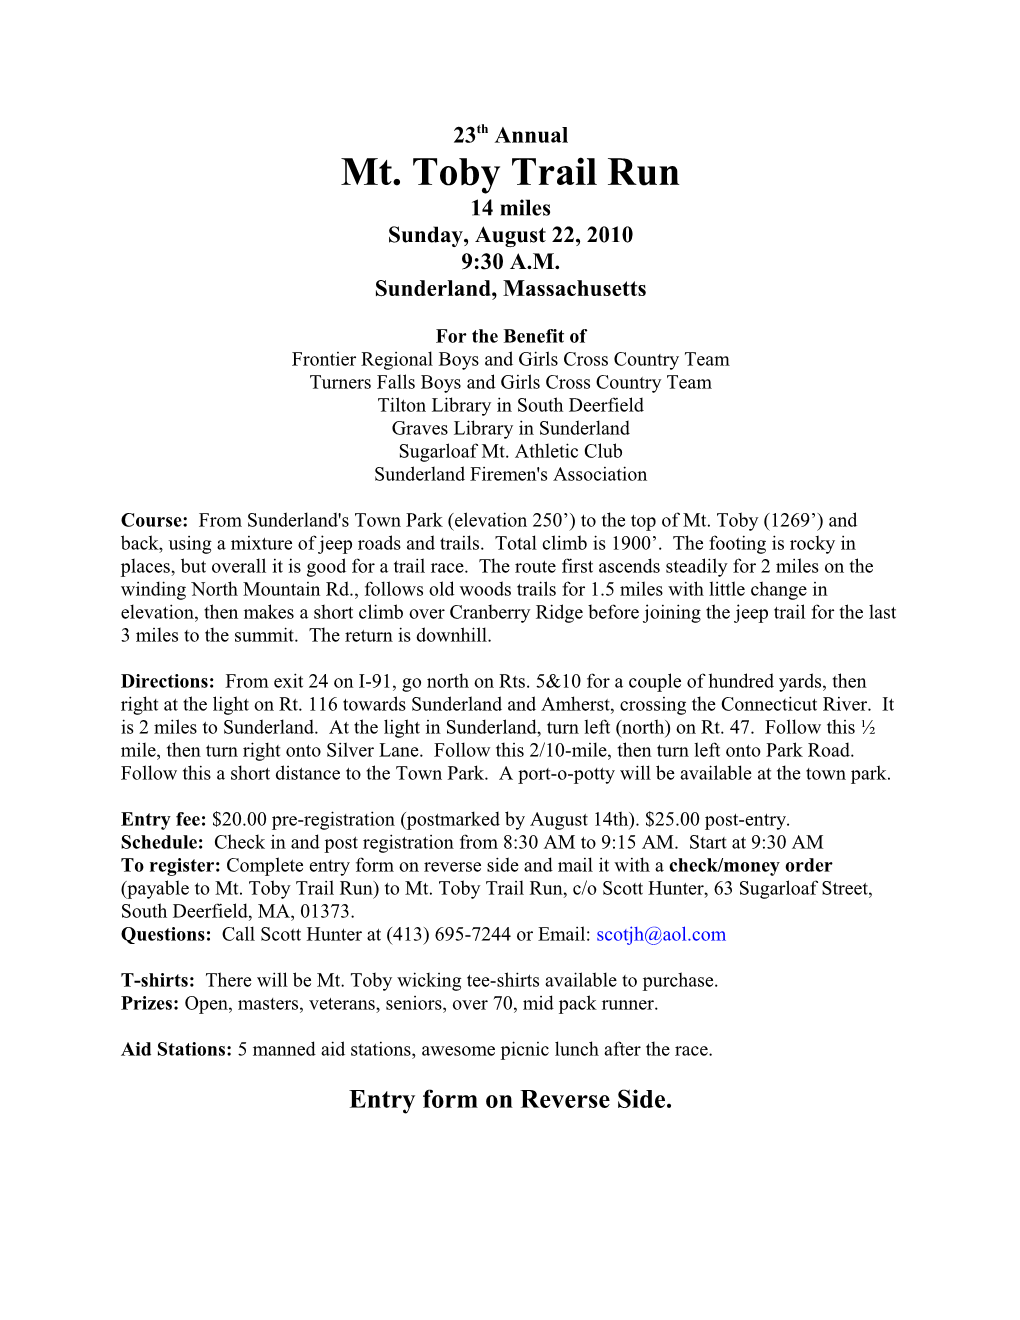 Mt. Toby Trail Run